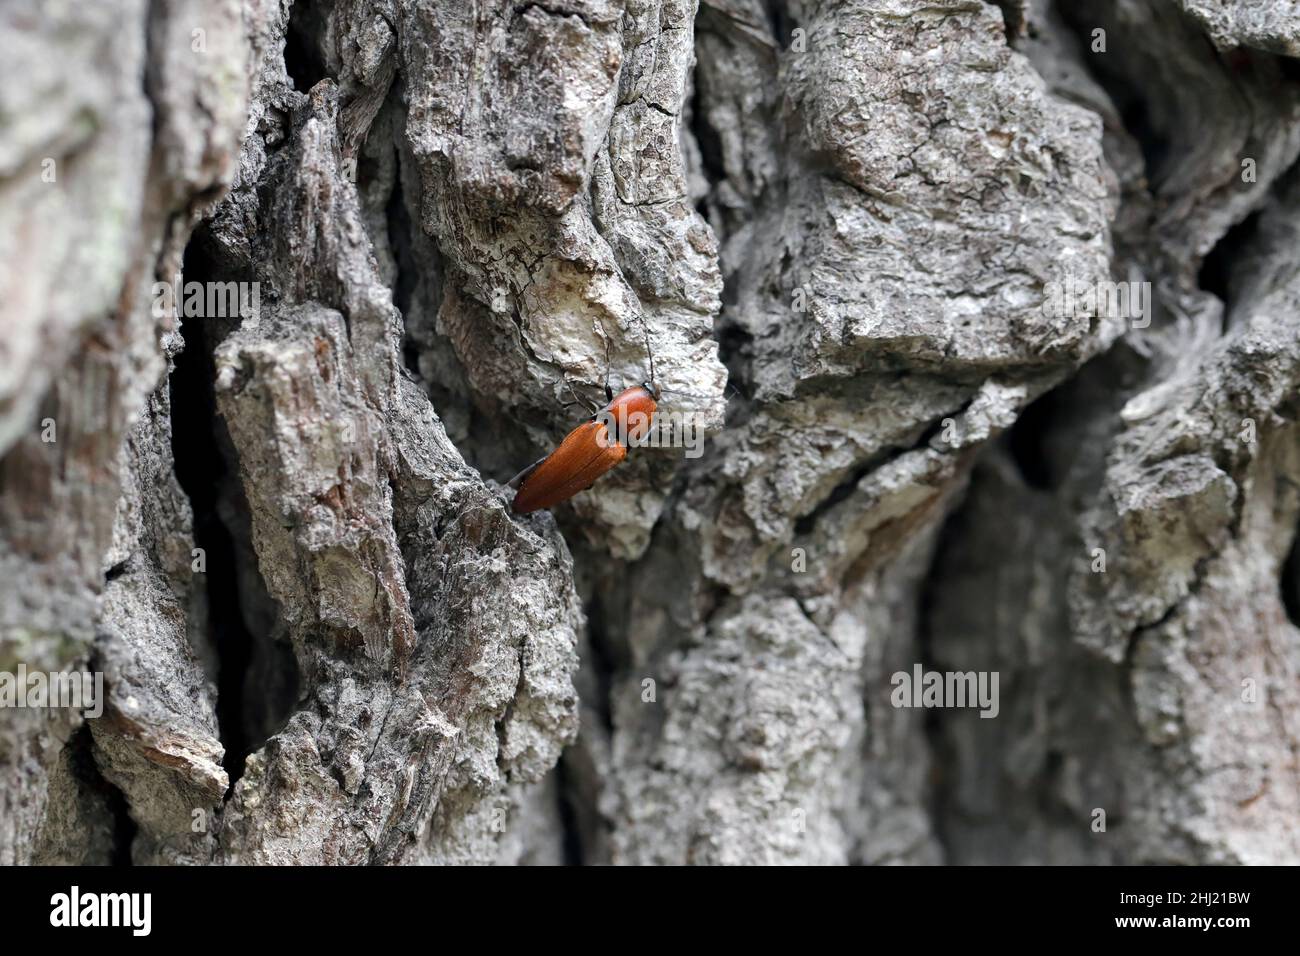 Die Nahaufnahme des Elater ferrugineus, der rostige Klickkäfer auf einer Eiche Stockfoto